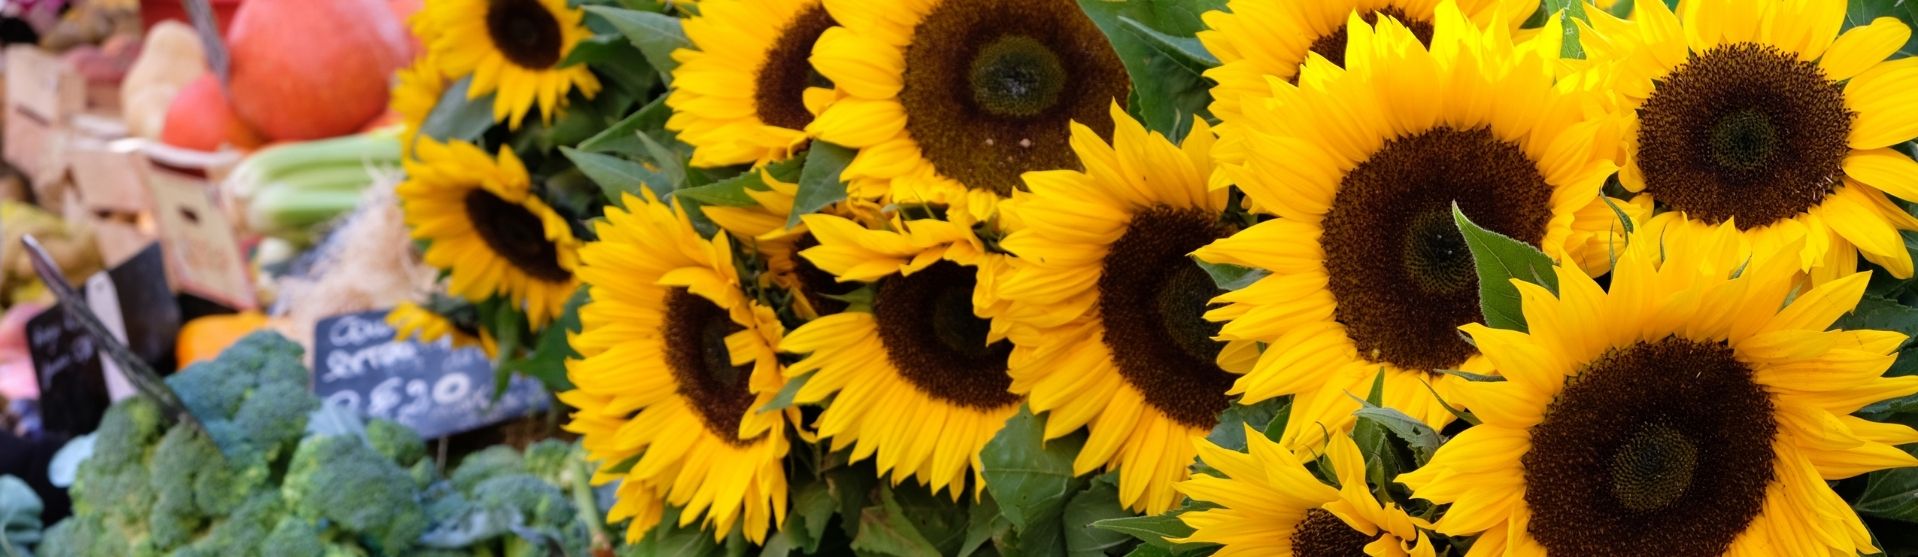 Sunflowers in Farmers market